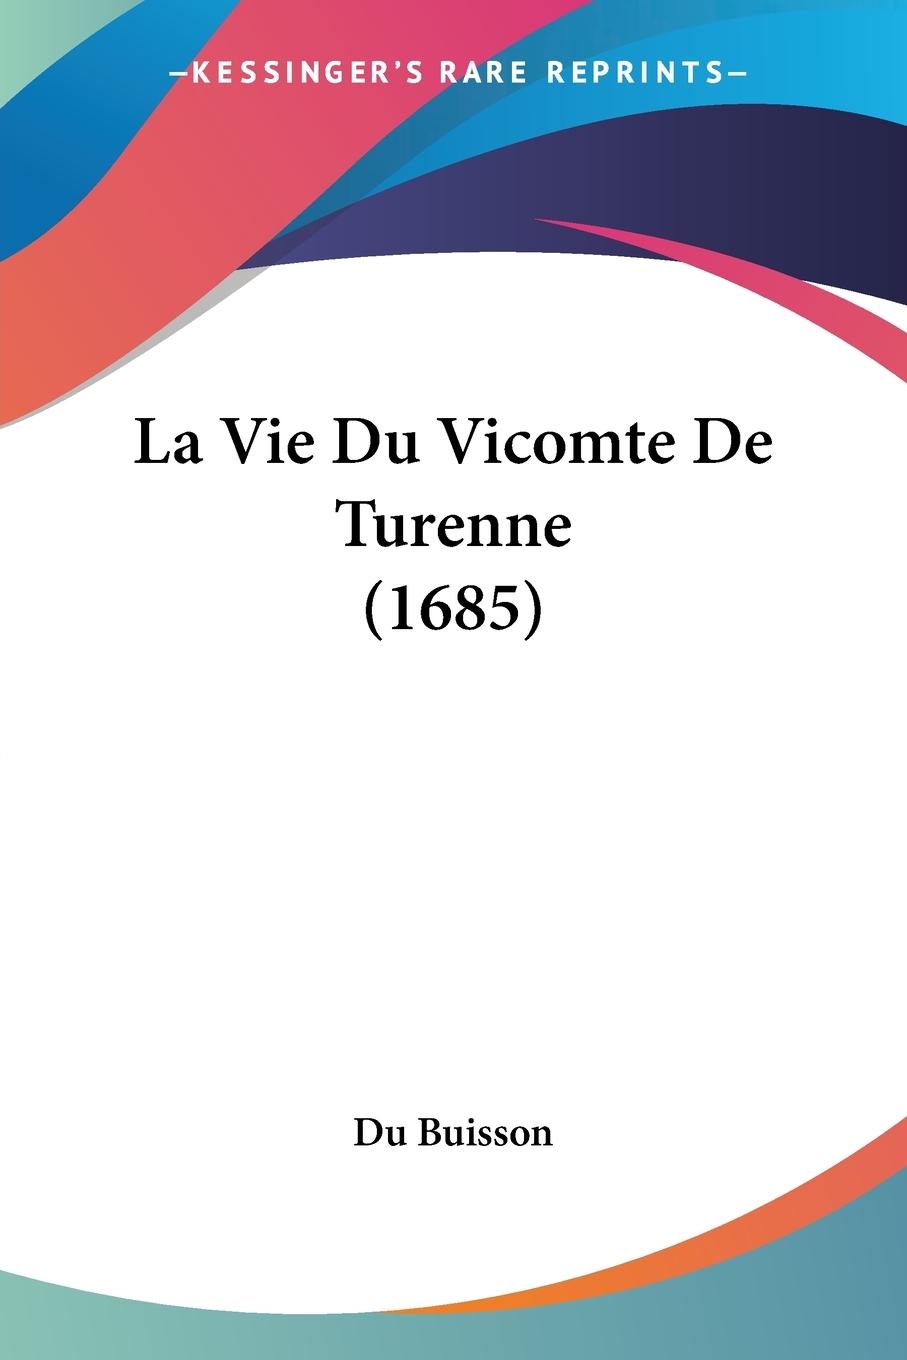 La Vie Du Vicomte De Turenne (1685) - Du Buisson